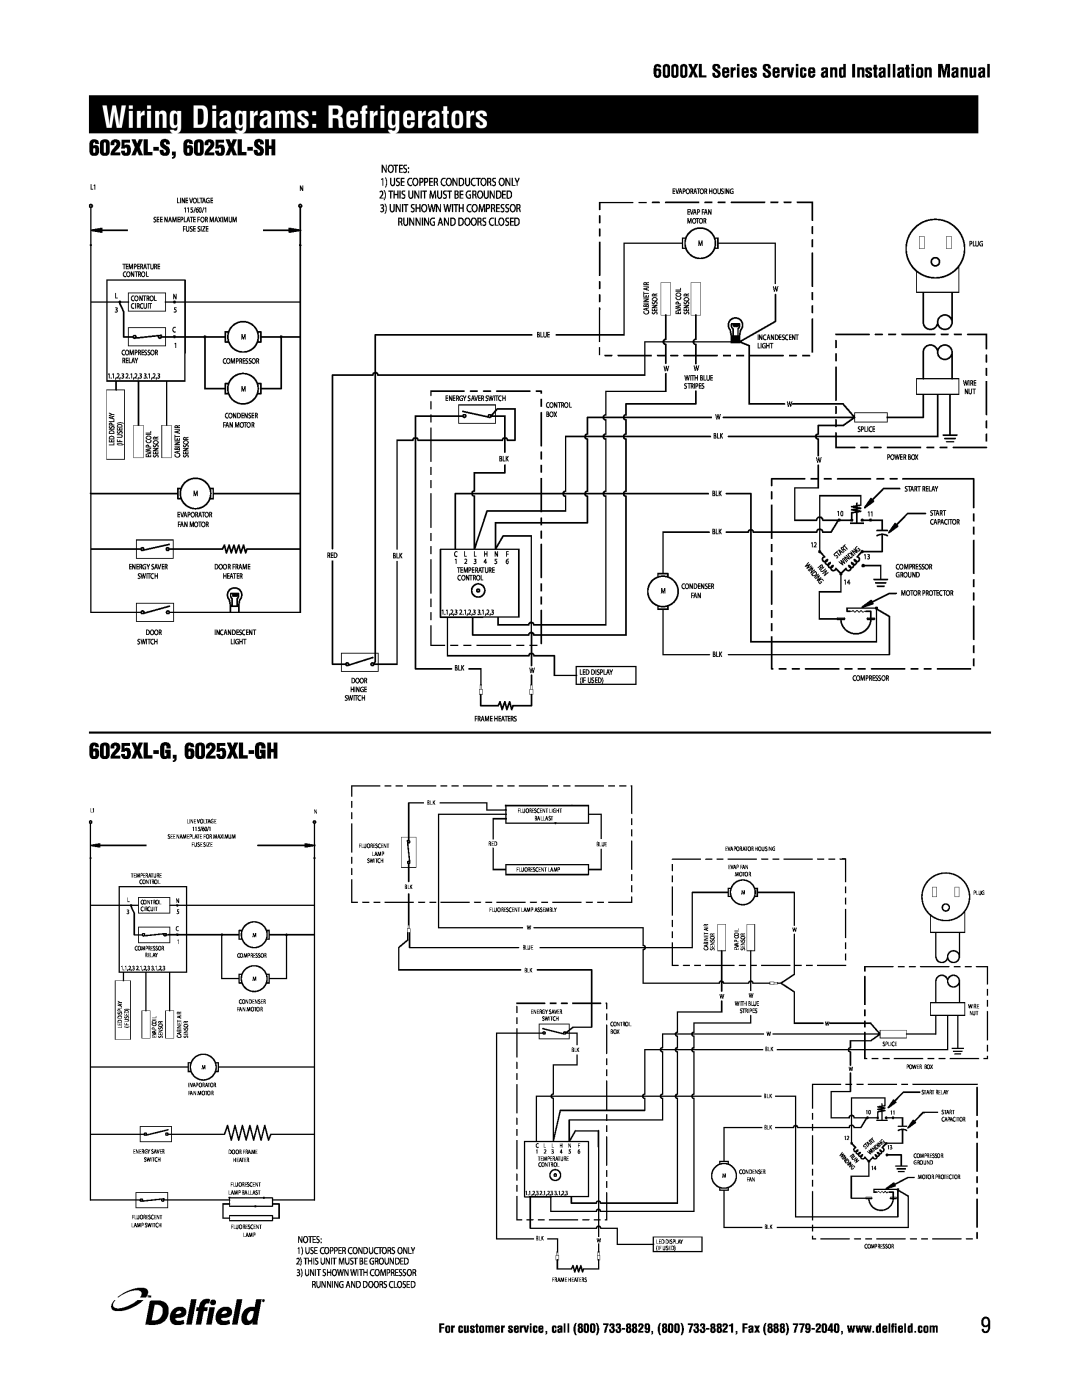 Delfield 6100XL manual Wiring Diagrams: Refrigerators, 6025XL-S, 6025XL-SH, 6025XL-G, 6025XL-GH, Delfield, Notes 